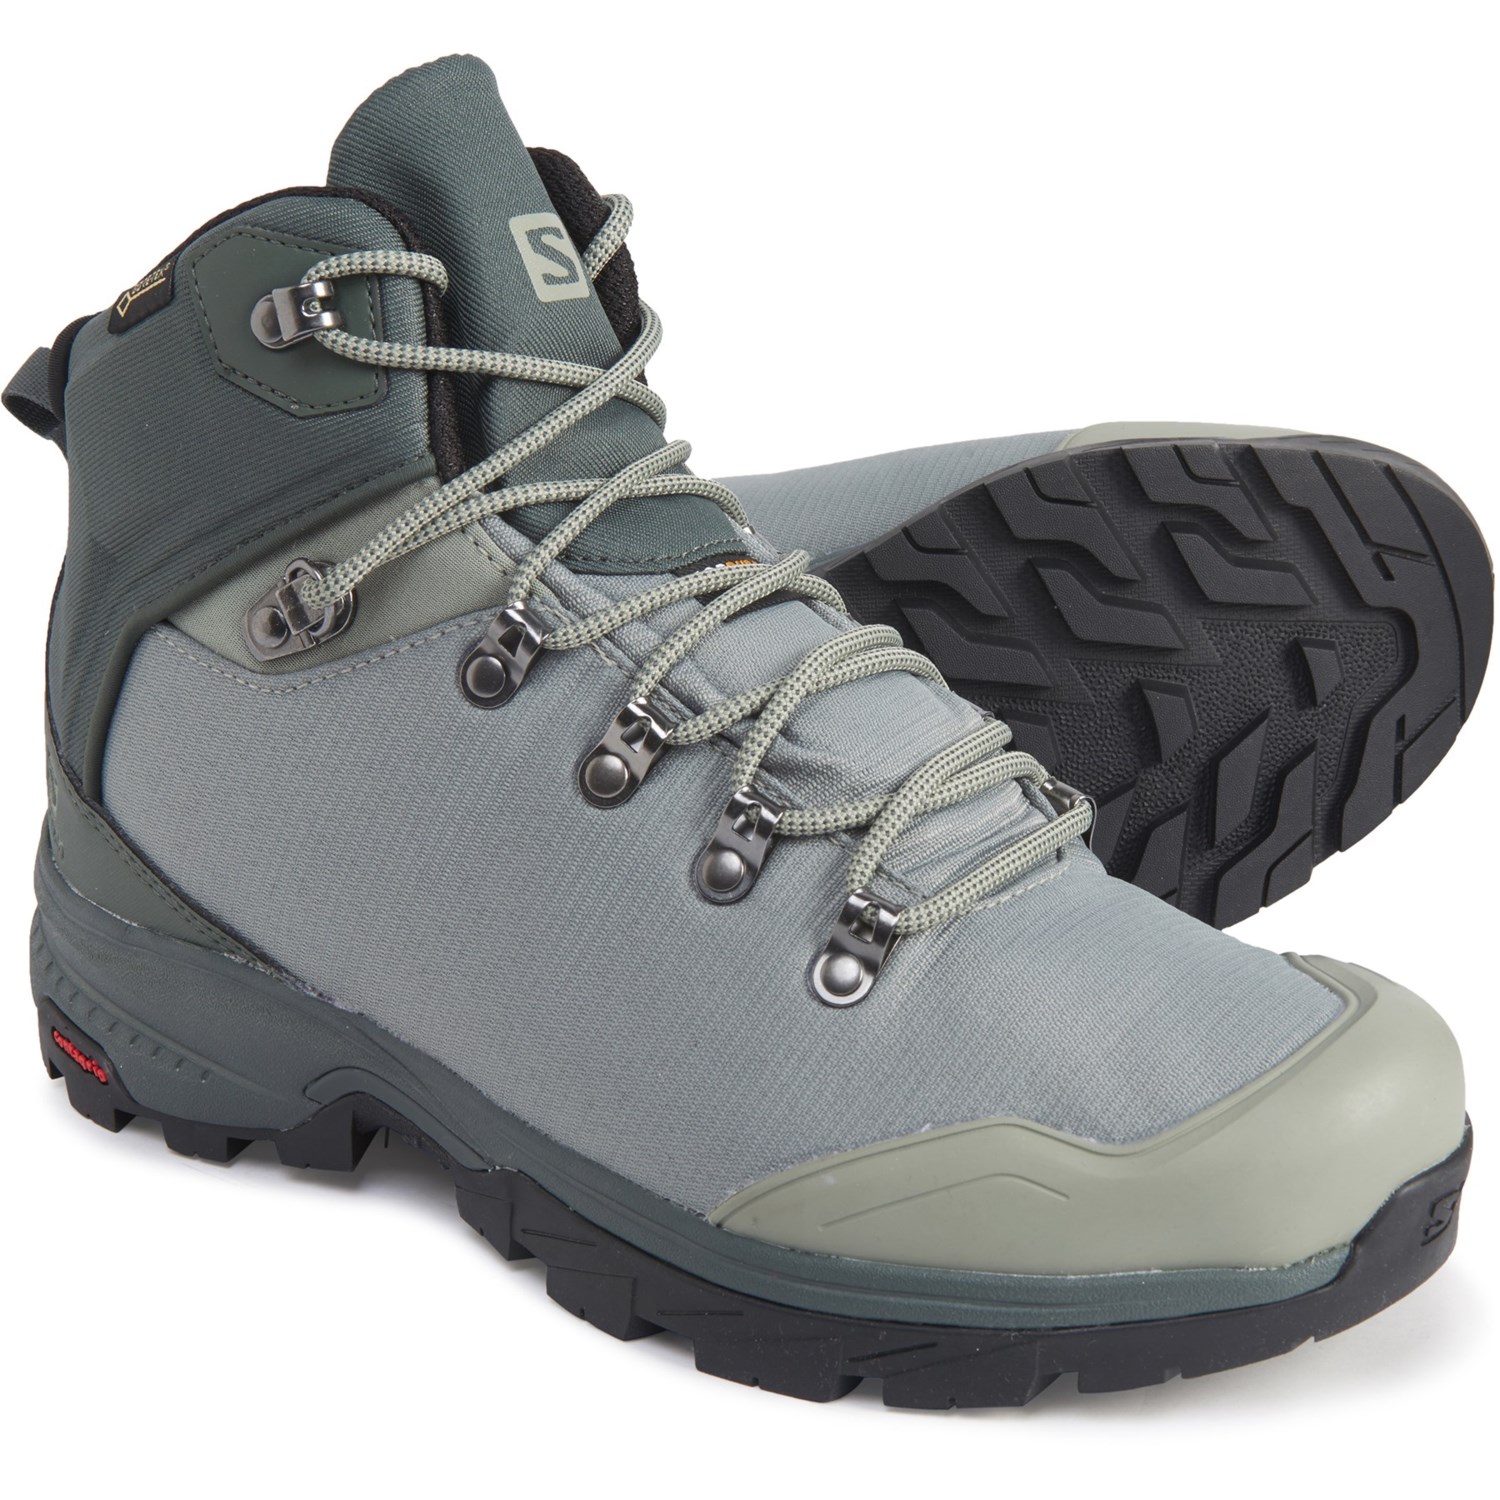 salomon hiking boots women's waterproof